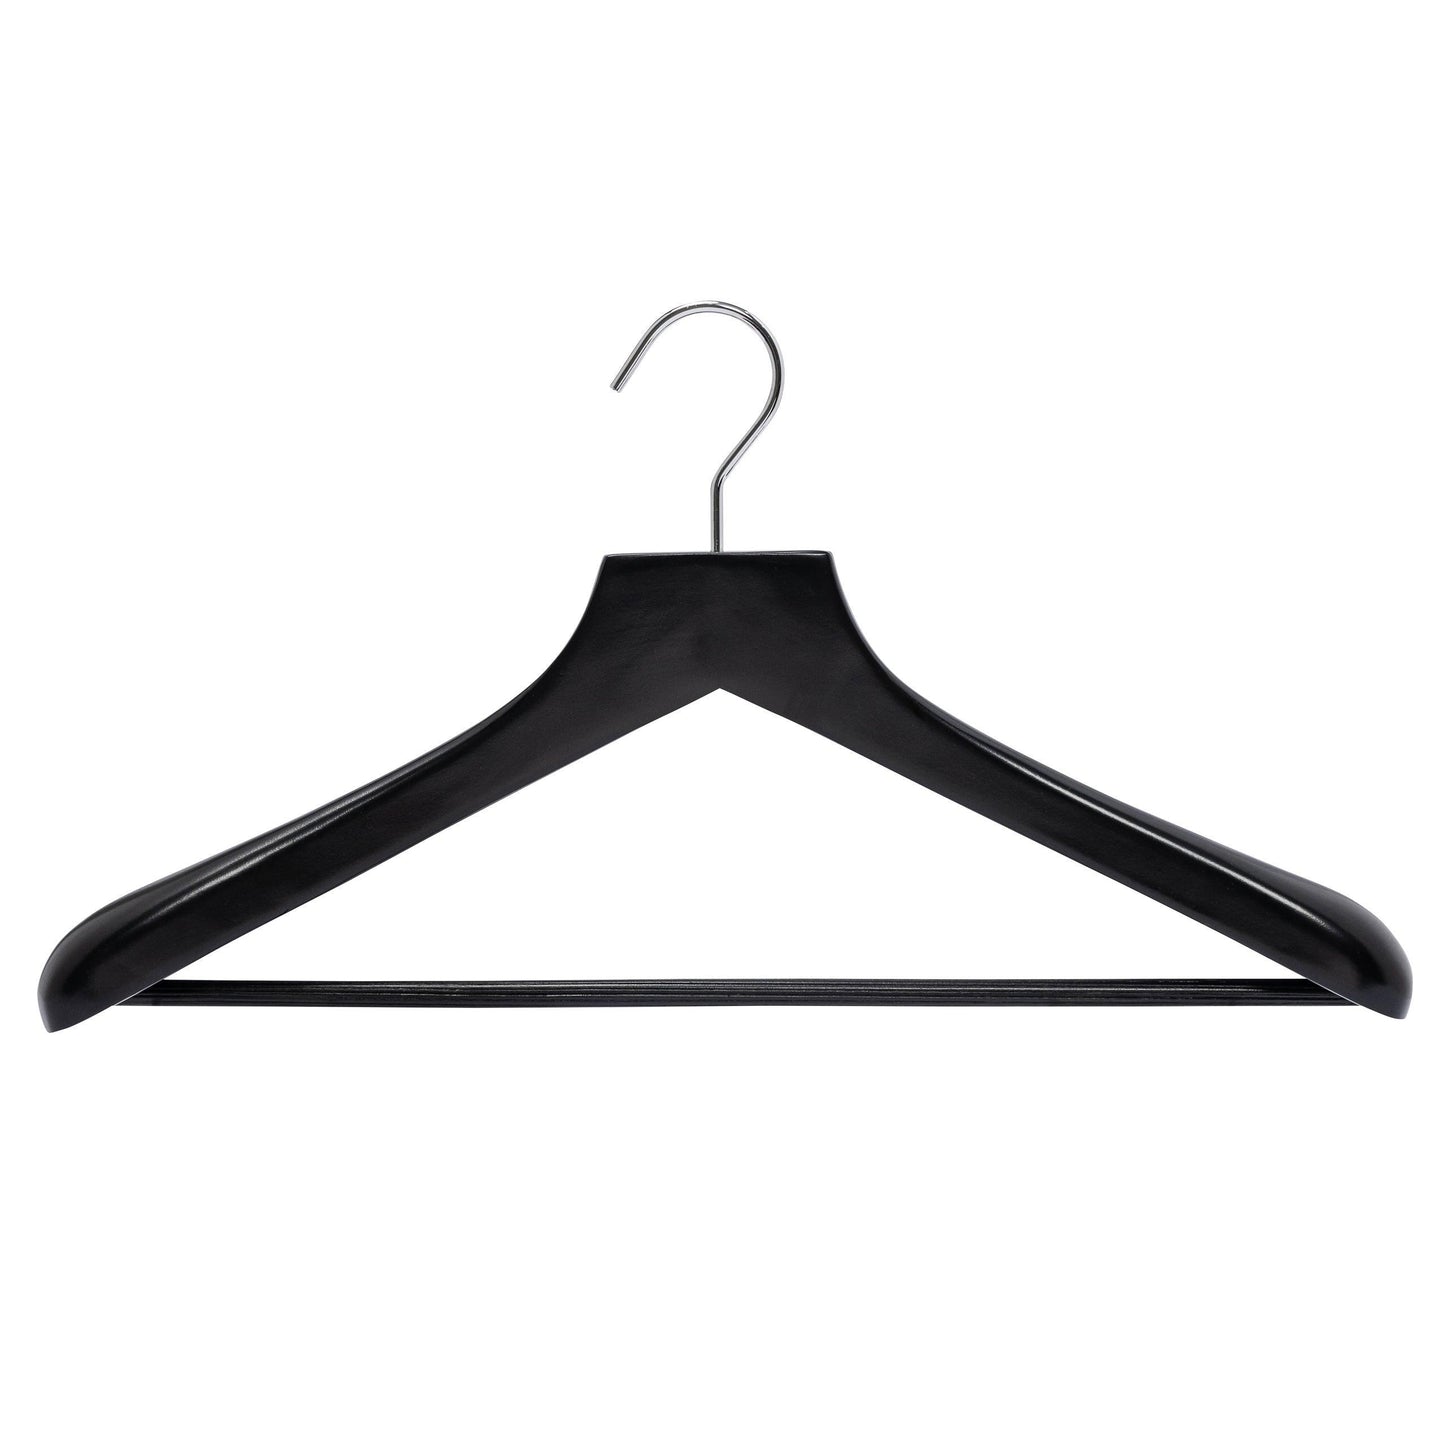 Deluxe Black Wooden Coat Hanger w/Non-Slip Bar - 46cm X 50mm Thick (Sold in 2/6/10/20) - Hangersforless